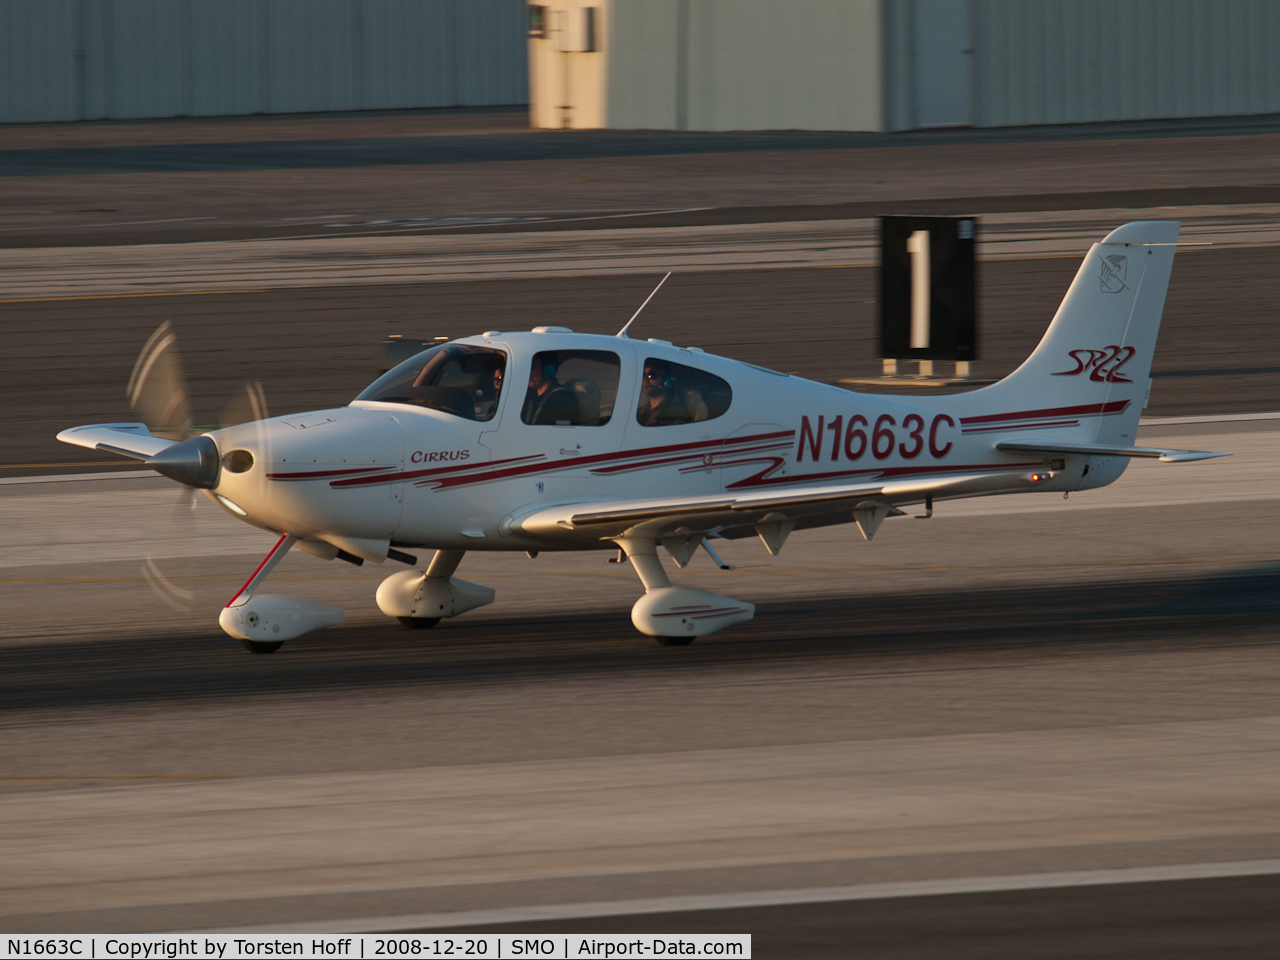 N1663C, 2003 Cirrus SR22 C/N 0585, N1663C departing from RWY 21